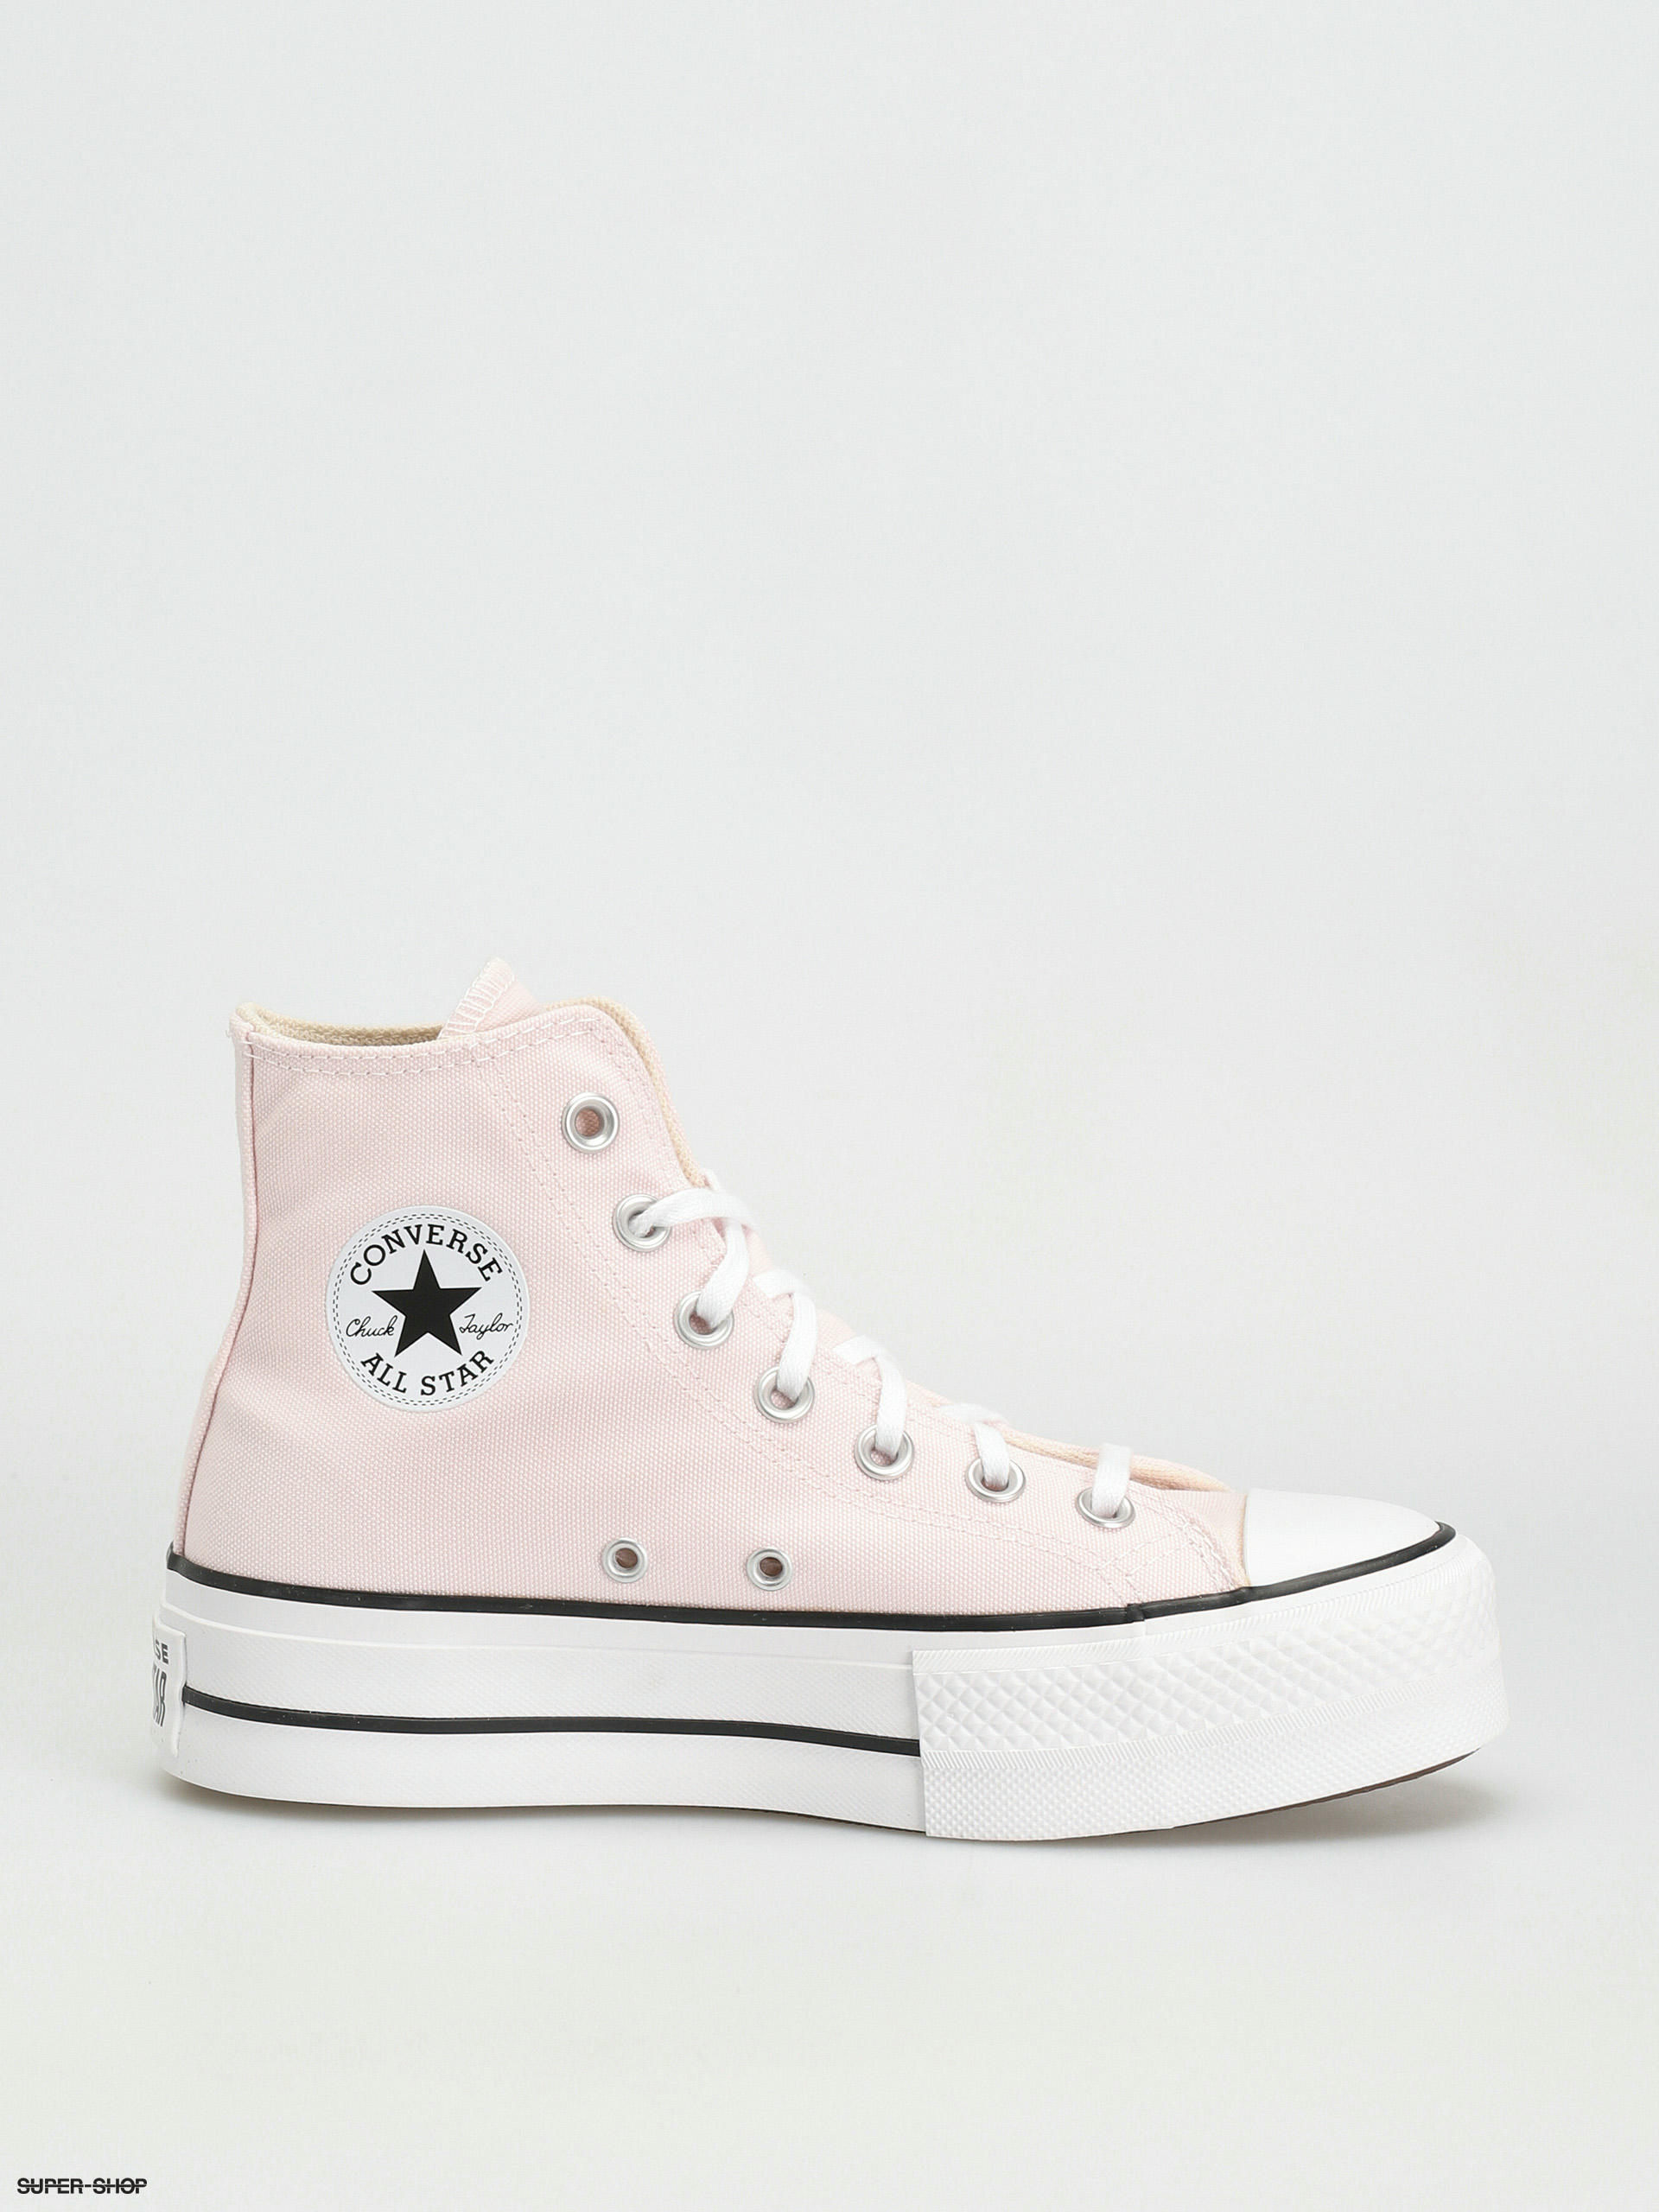 Converse All Star Hi Chucks Wmn (decade pink/white/black)